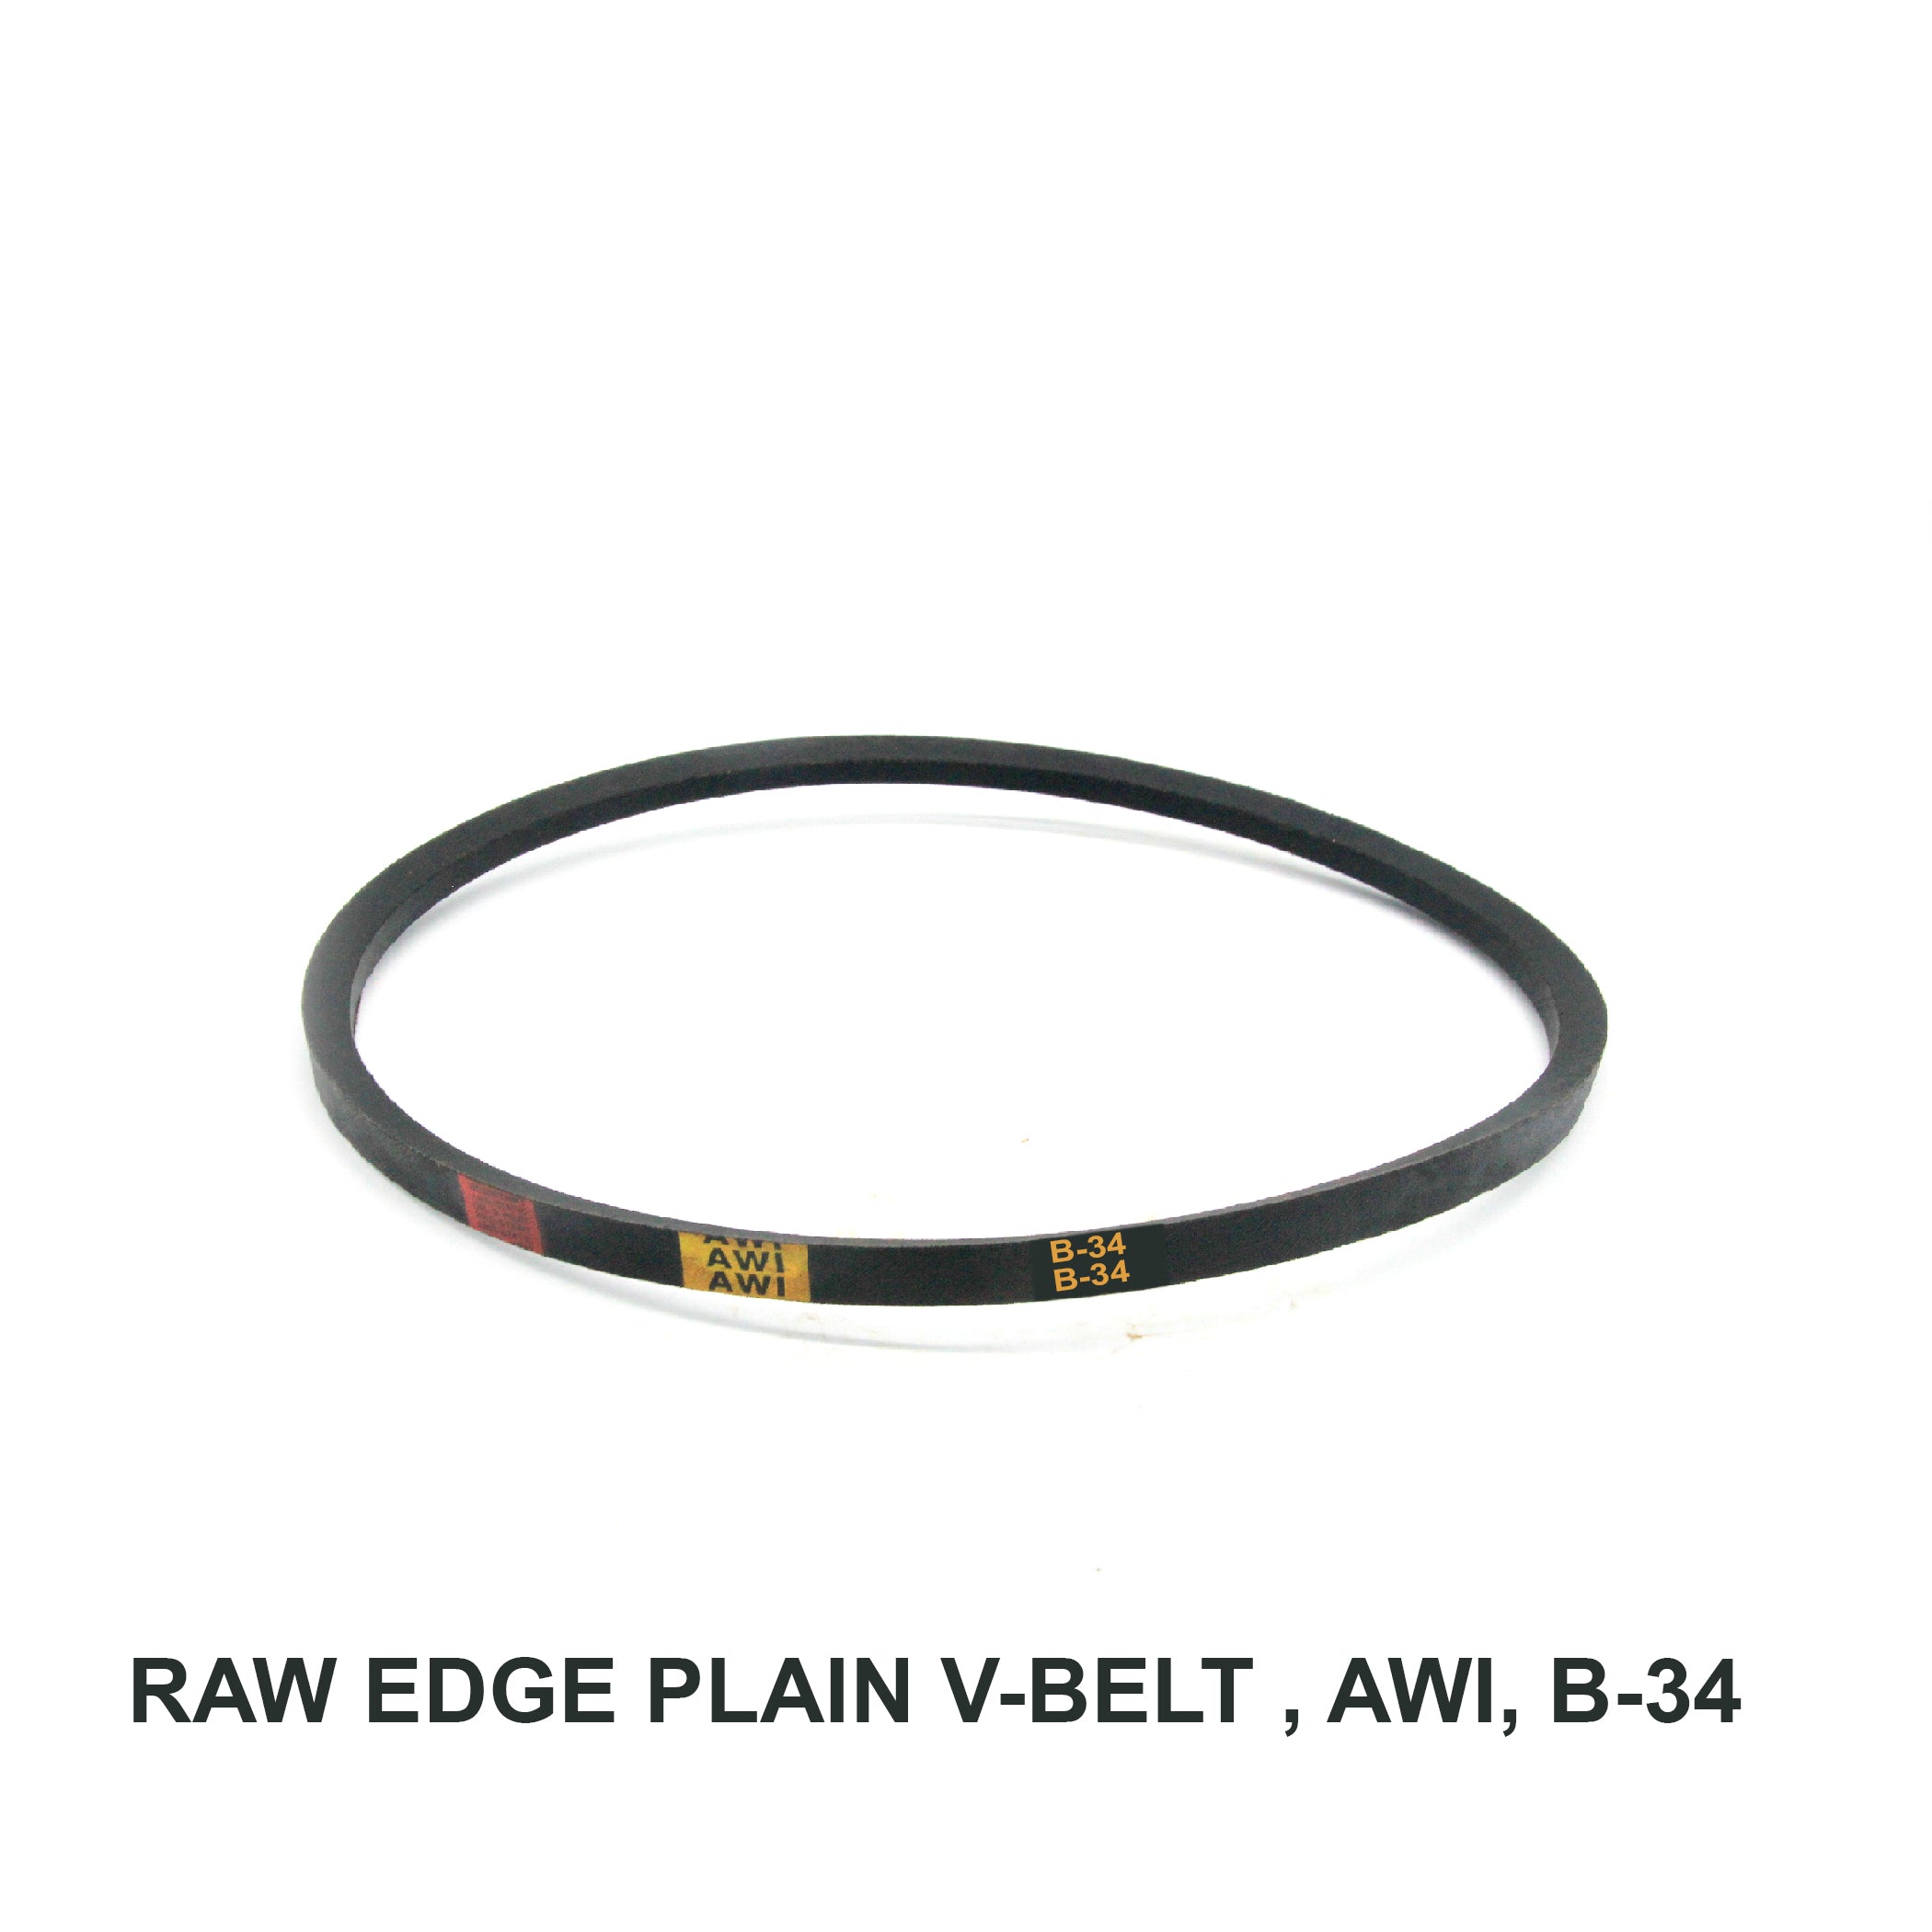 Raw Edge Plain V-belt (REMF), AWI, B-34 (006594)